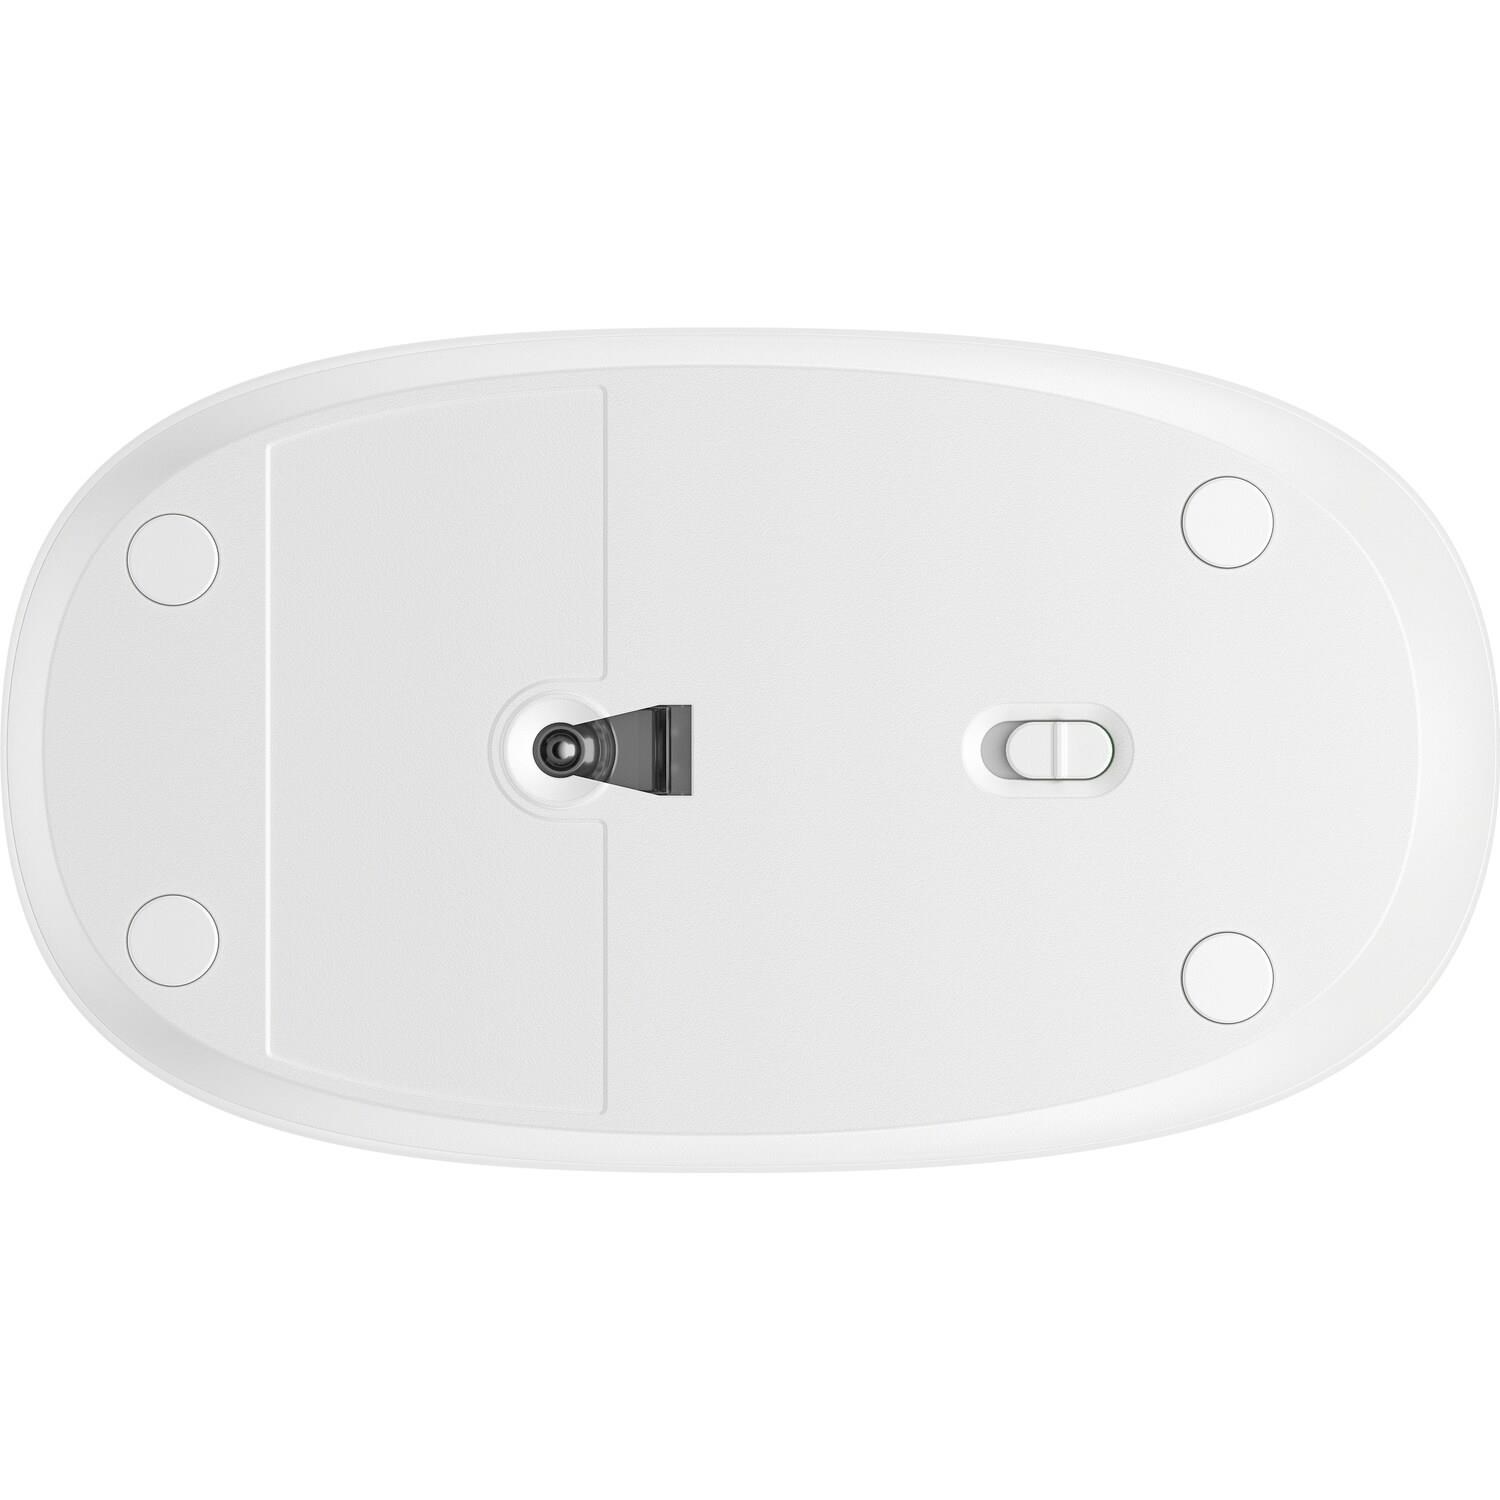 HP 240 Bluetooth Mouse White EURO - bezdrátová bluetooth myš3 